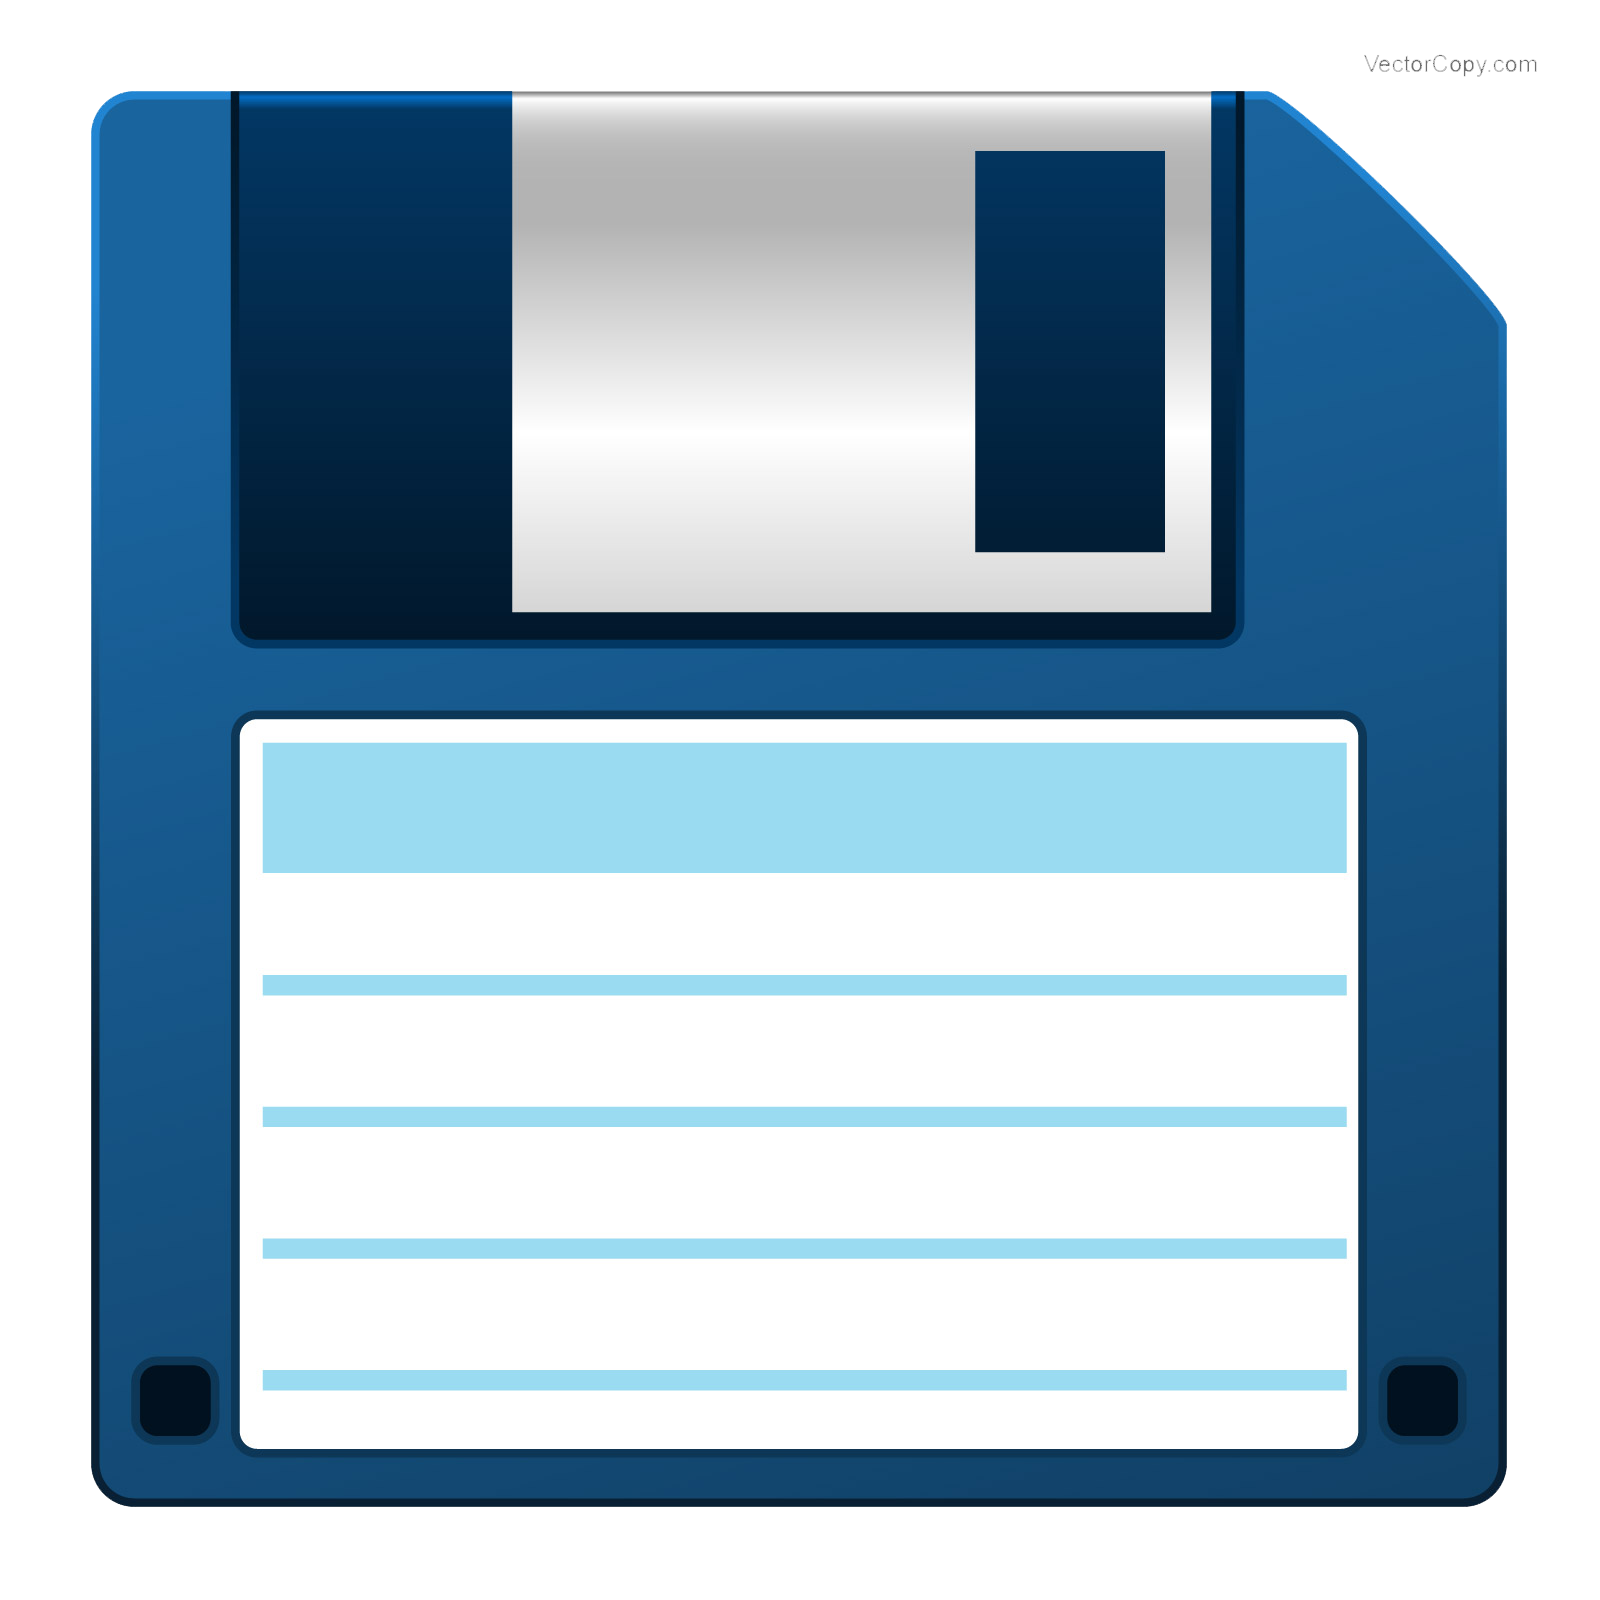 Сохранение. Значок дискеты. Иконка сохранения. Иконка сохранить файл. Иконка дискетки.